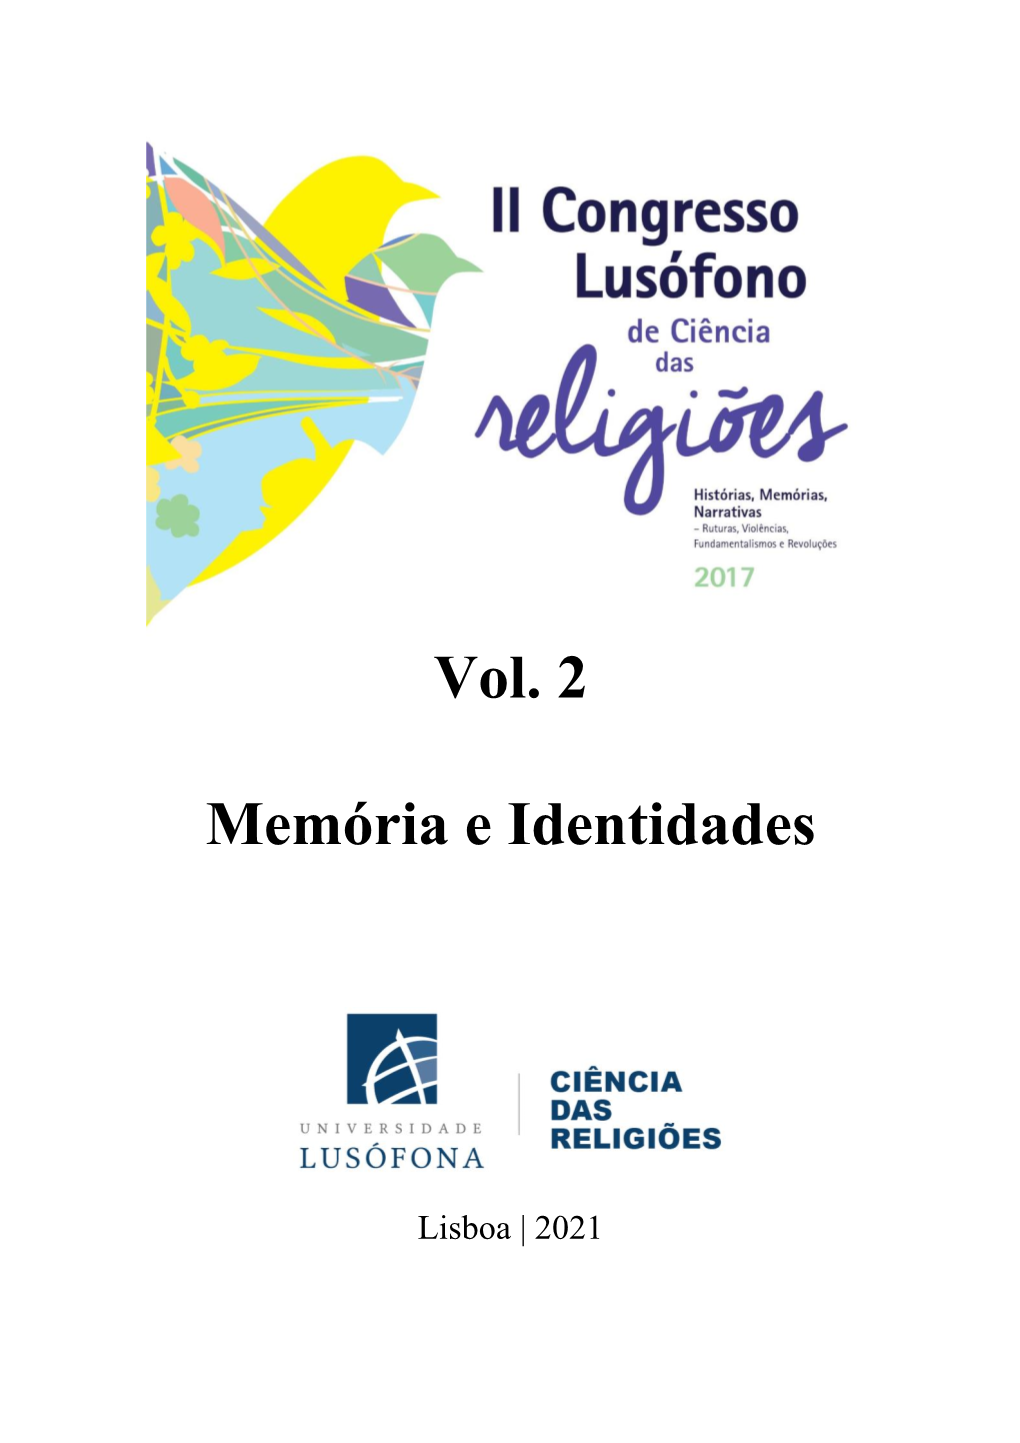 II Congresso Lusófono De Ciência Das Religiões, Realizado Em Lisboa, Nos Dias 27 a 30 De Maio De 2017